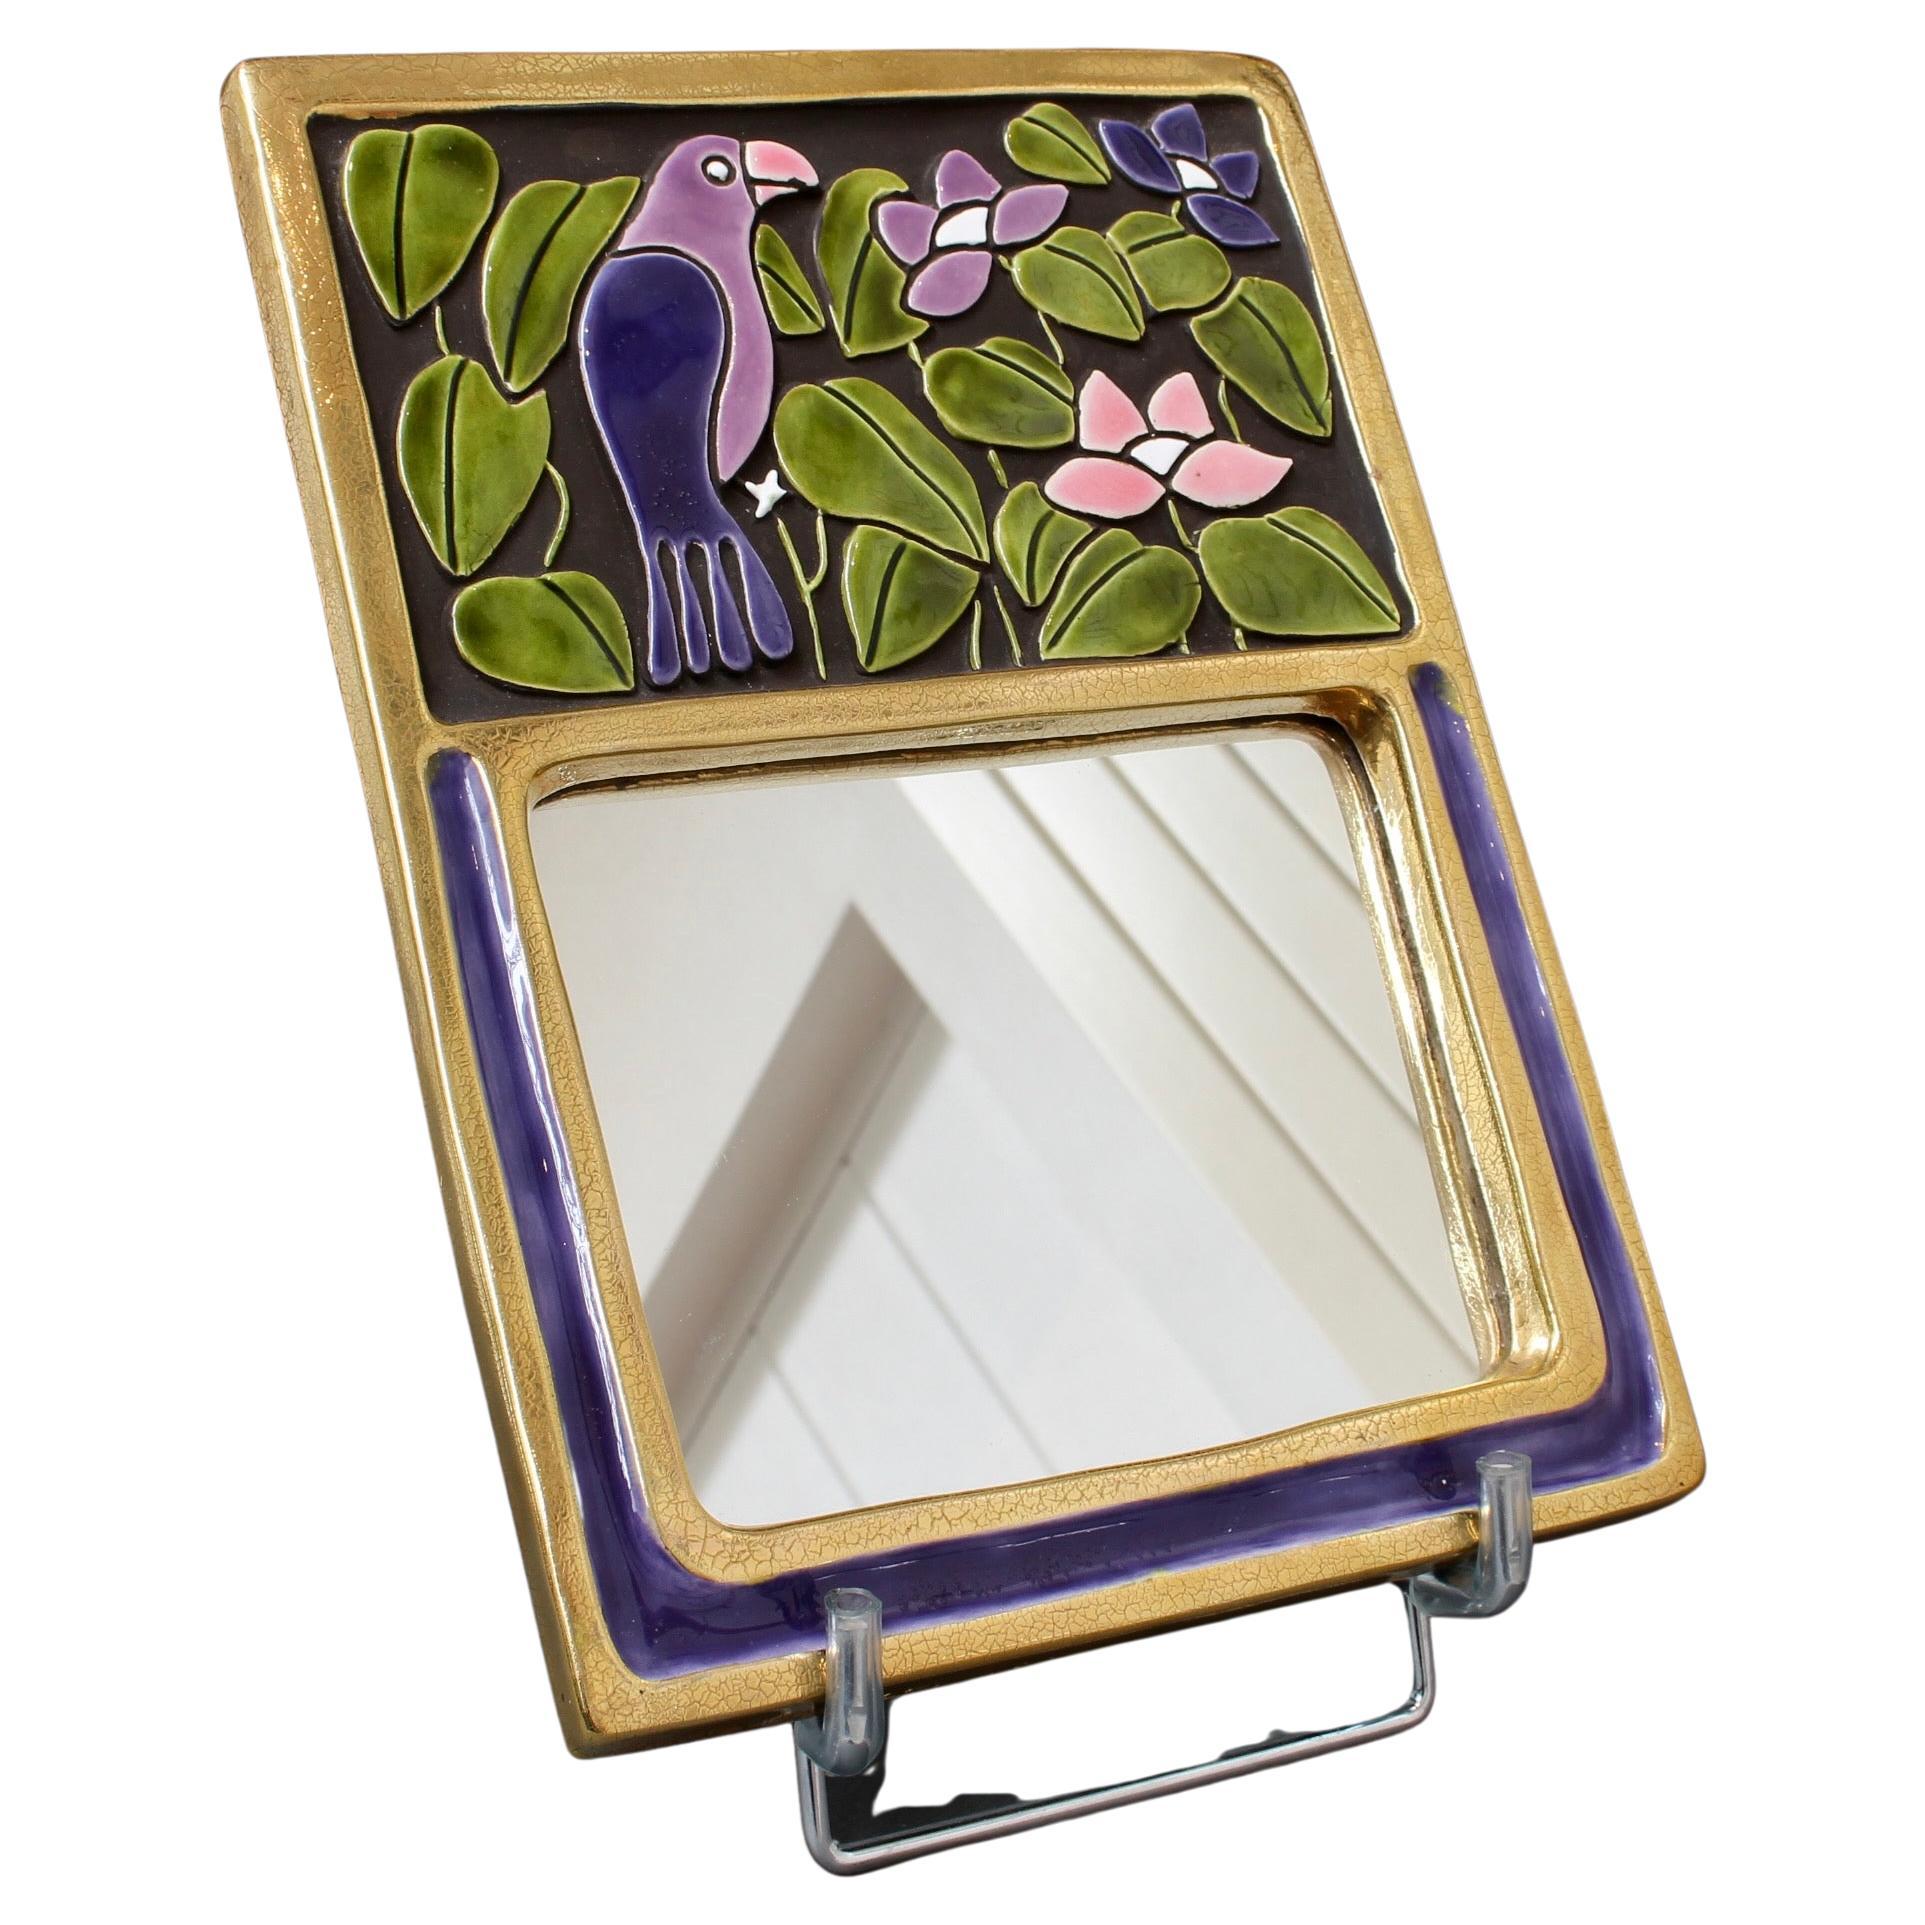 Miroir mural en céramique avec glaçure violette et verte et oiseau stylisé (circa 1970) par Mithé Espelt. Un charmant miroir mural fantaisiste décoré d'un perroquet perché parmi les fleurs et la verdure situé au-dessus du miroir rectangulaire. Le